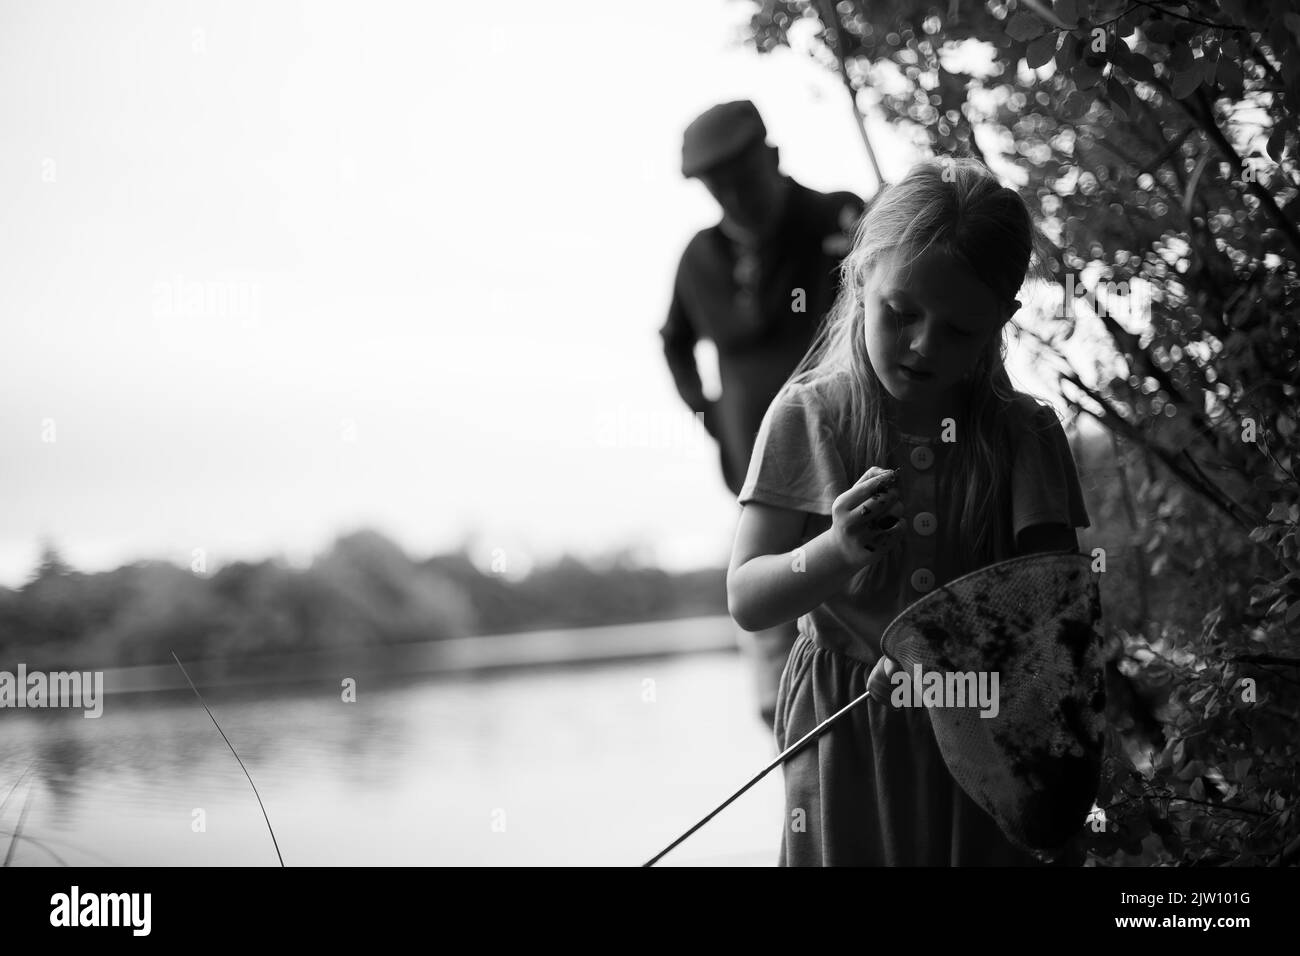 Une jeune femme caucasienne tient un filet de pêche et examine quelque chose dans une autre main tandis que son grand-père regarde en arrière-plan. Banque D'Images